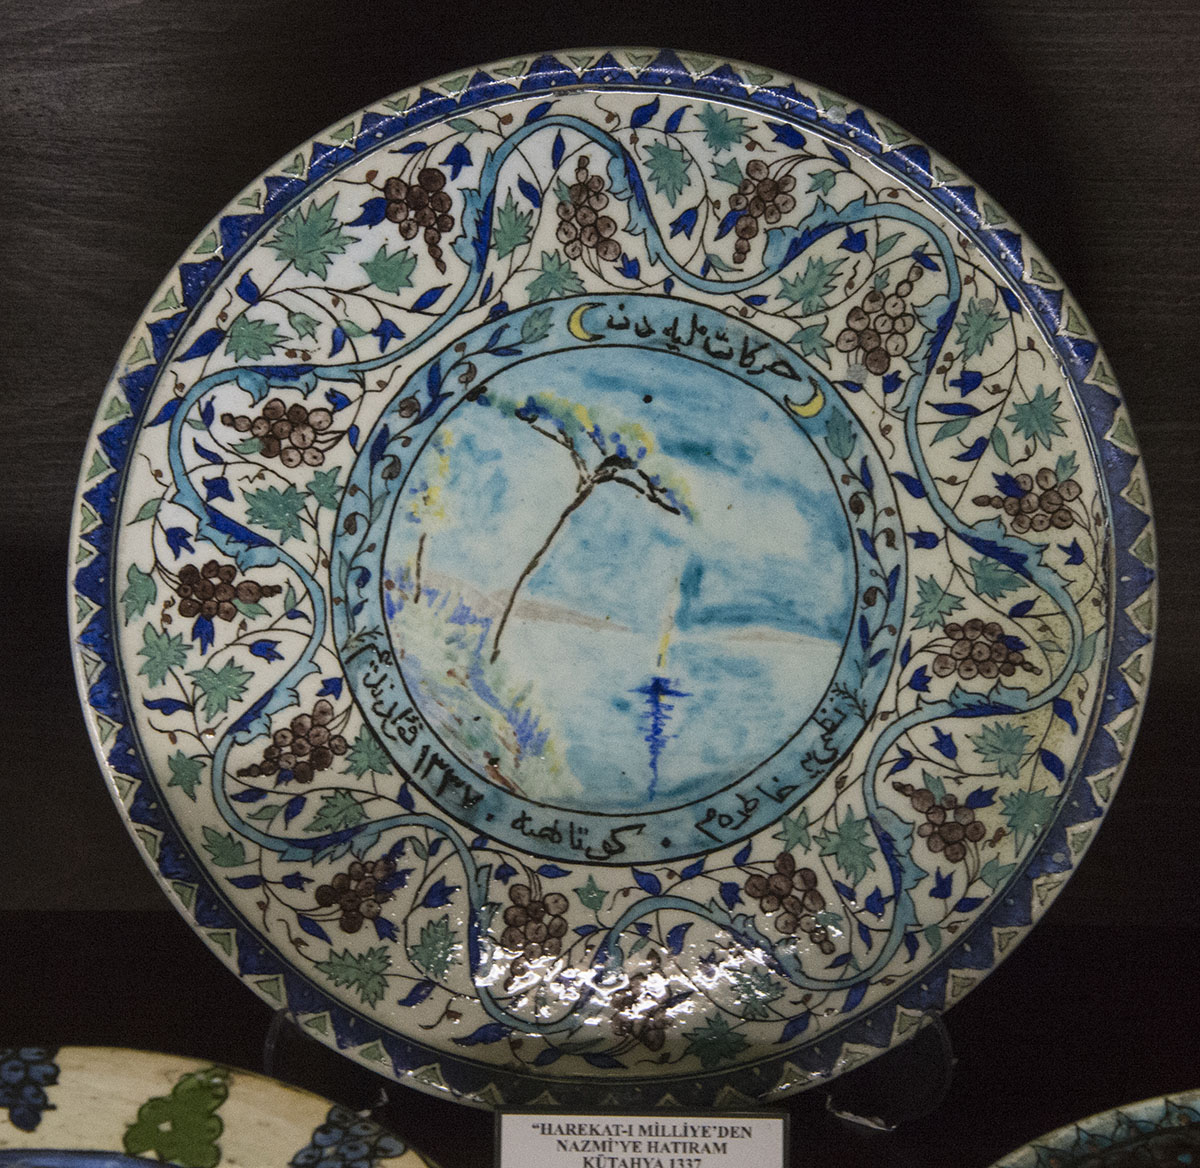 Kutahya Ceramics Museum october 2018 8986.jpg